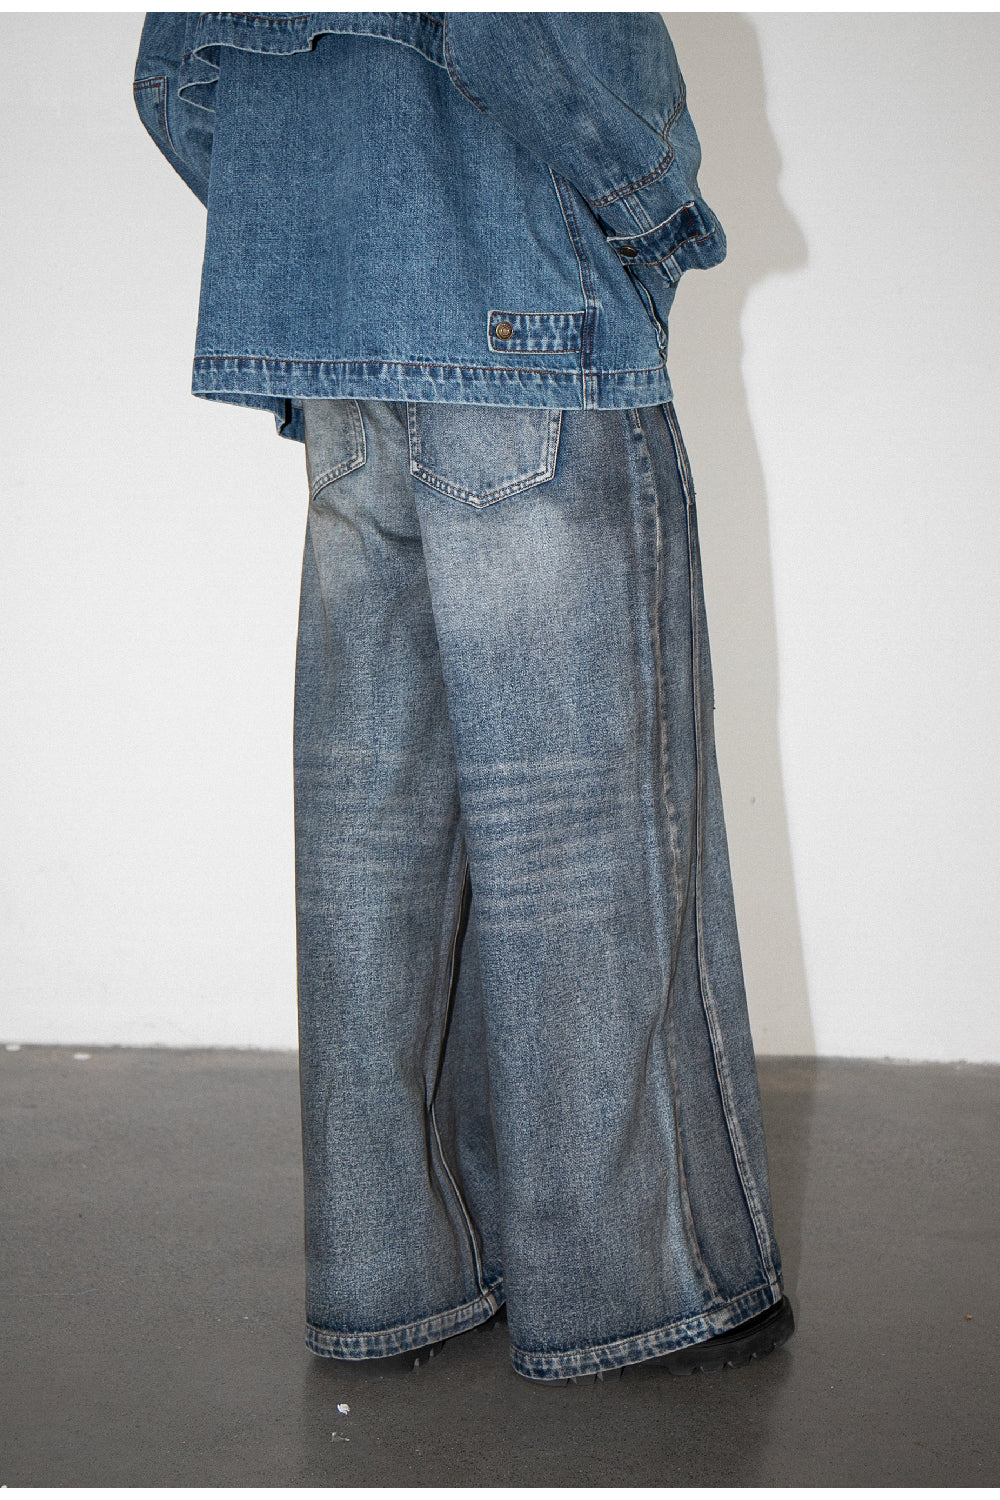 Unisex Retro Washed Jeans